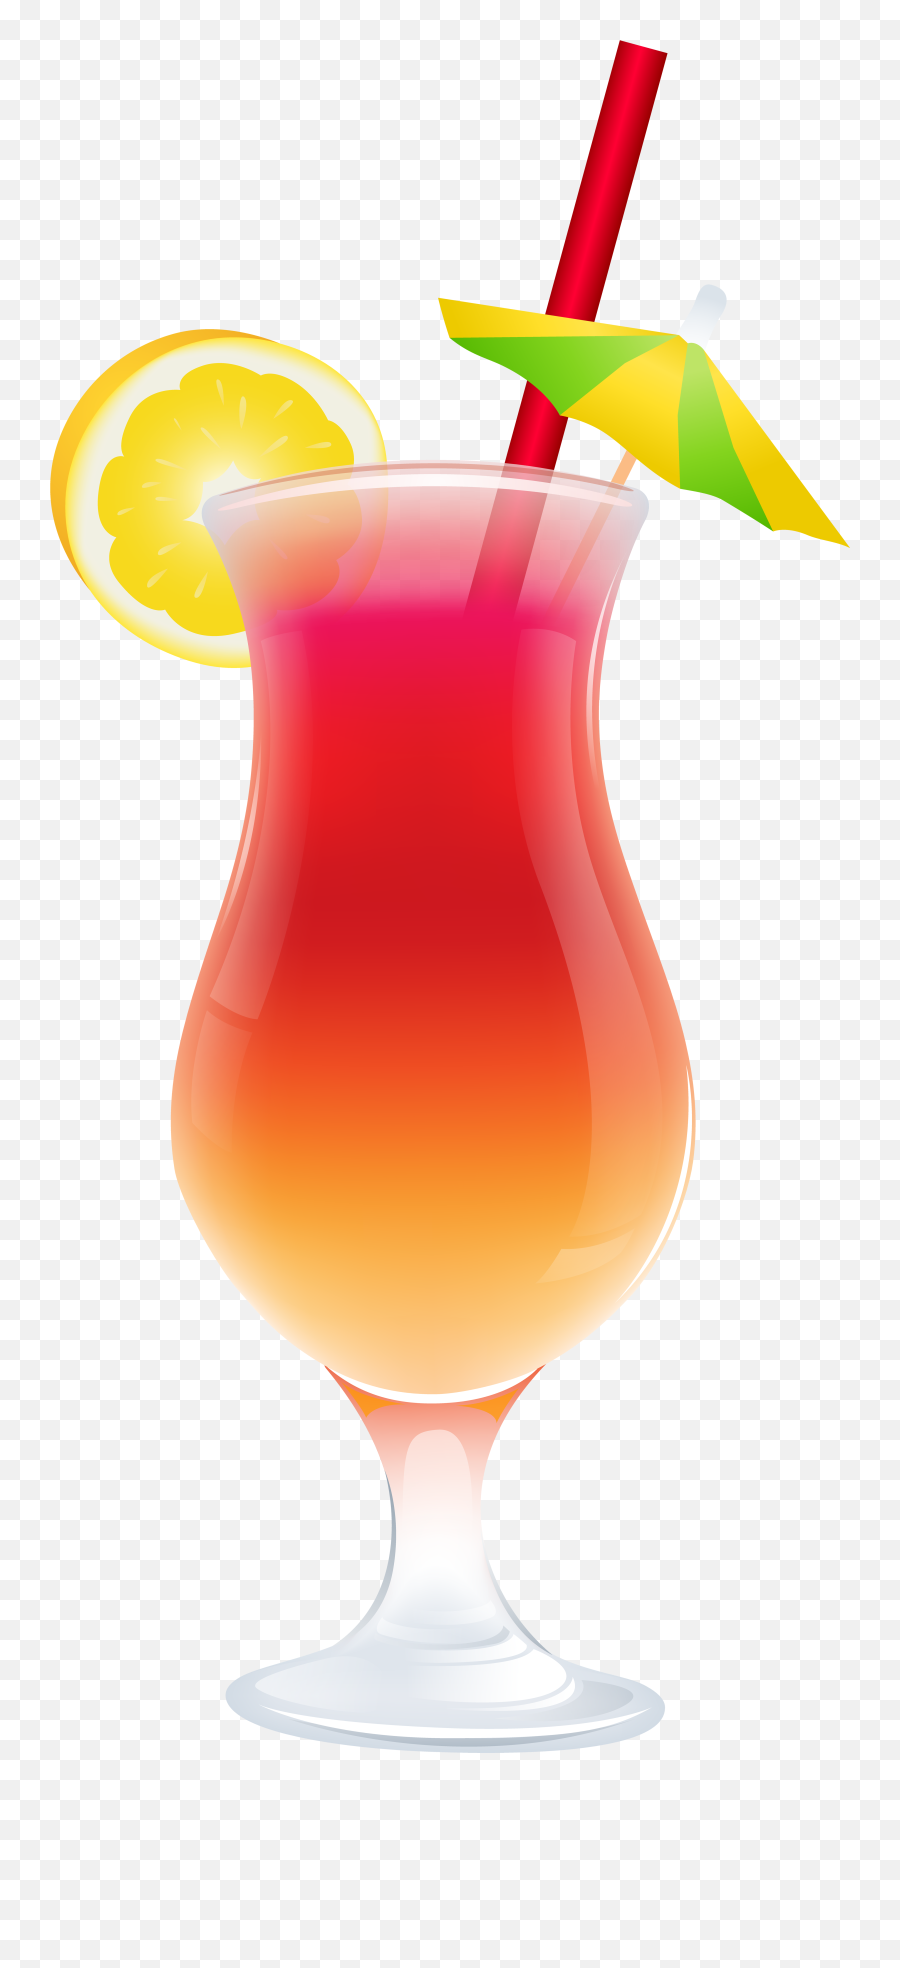 Tropical Drink - Transparent Background Drink Png Emoji,Tropical Drink Emoji